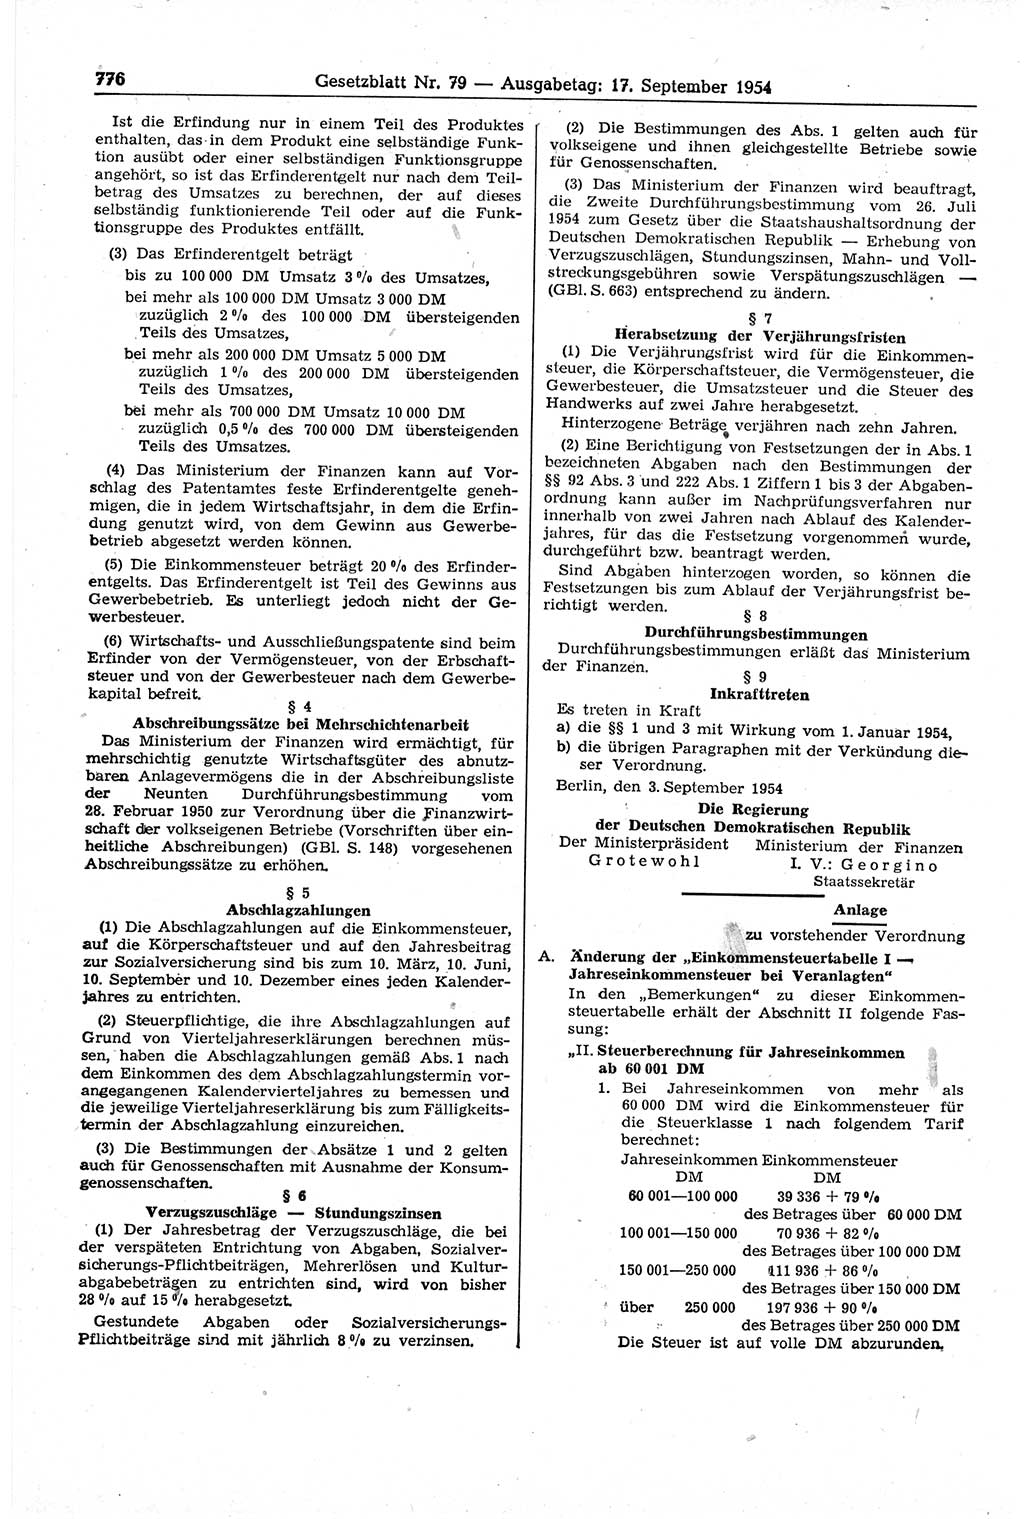 Gesetzblatt (GBl.) der Deutschen Demokratischen Republik (DDR) 1954, Seite 776 (GBl. DDR 1954, S. 776)